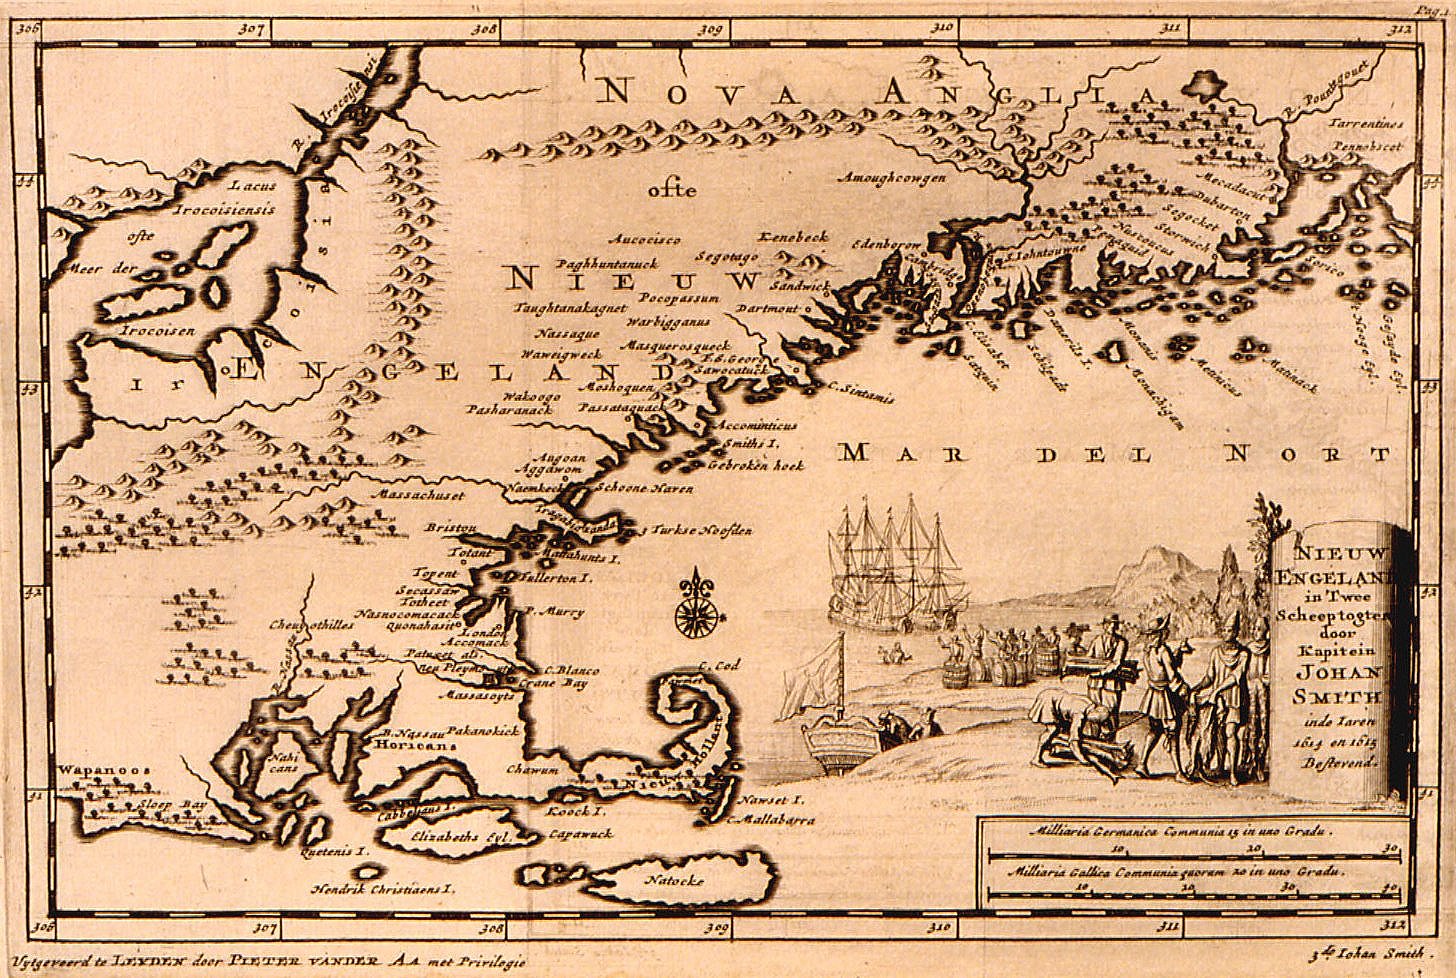 historische Karte: Karte der USA (New England) von 1707